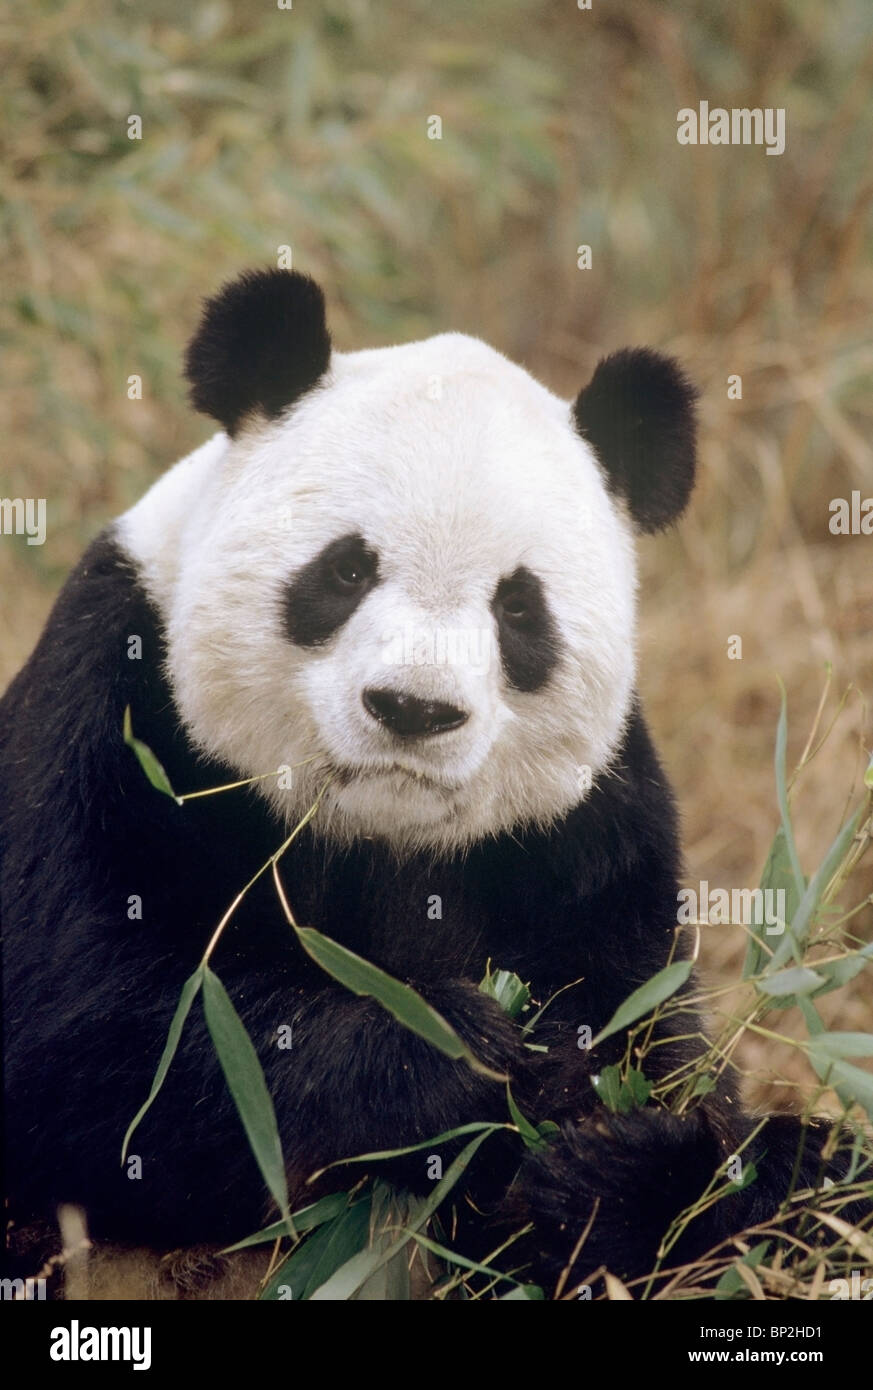 Panda gigante alimentándose de bambú, Wolong, China. Foto de stock